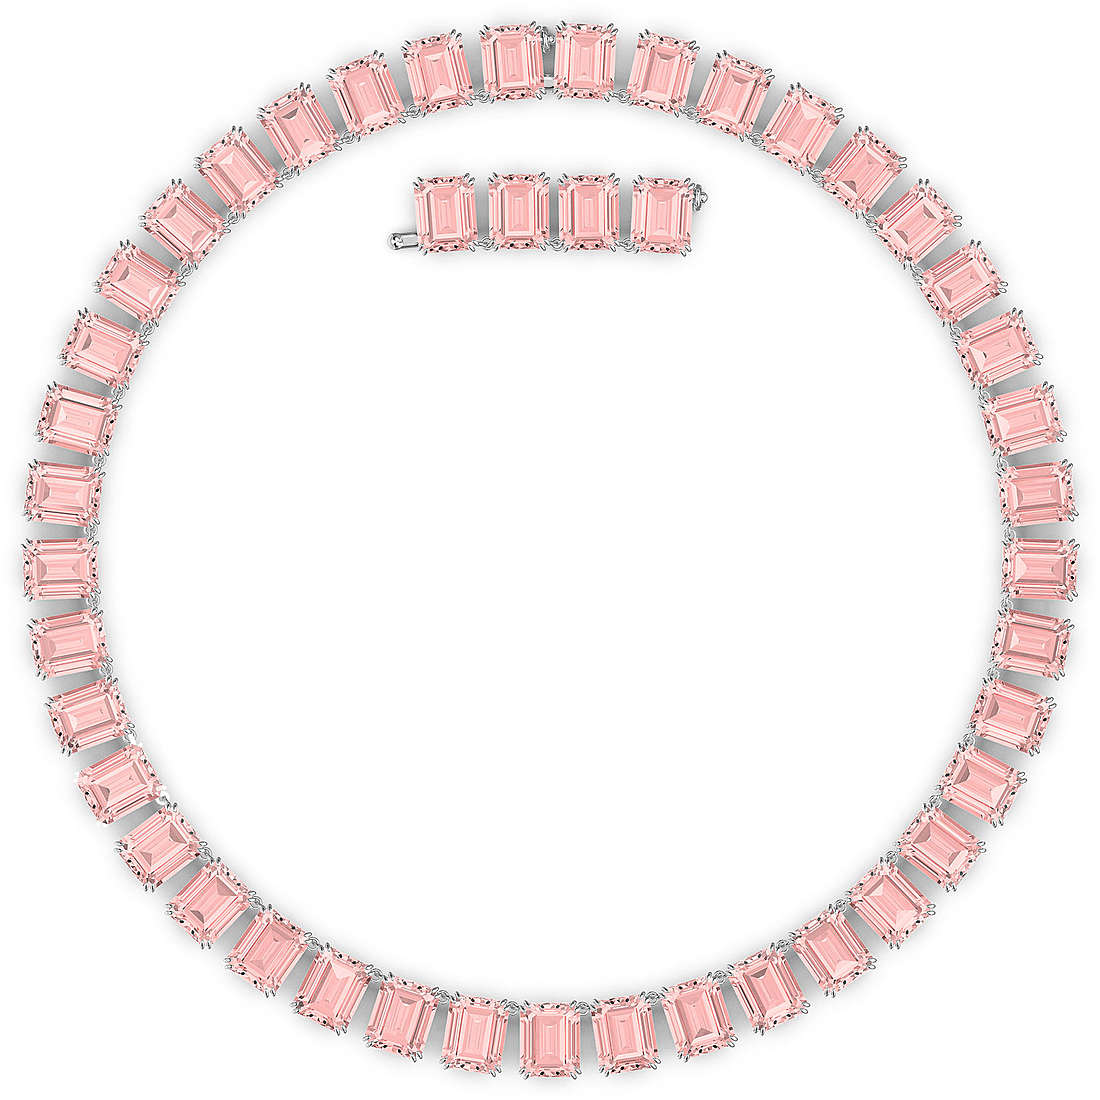 necklace woman jewellery Swarovski Millenia 5608807